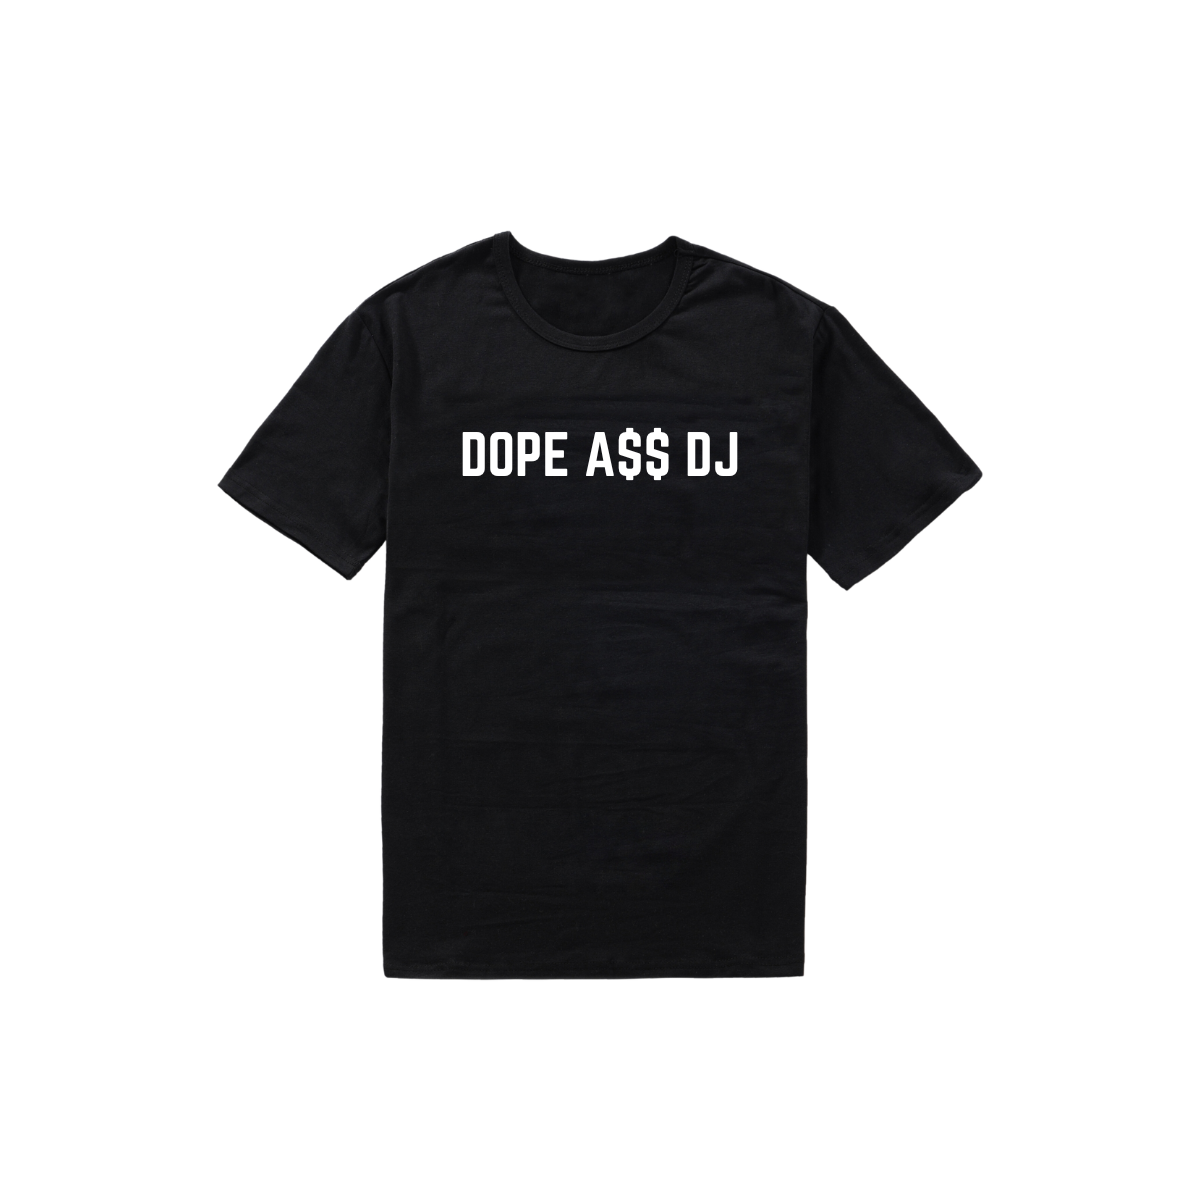 Dope A$$ DJ